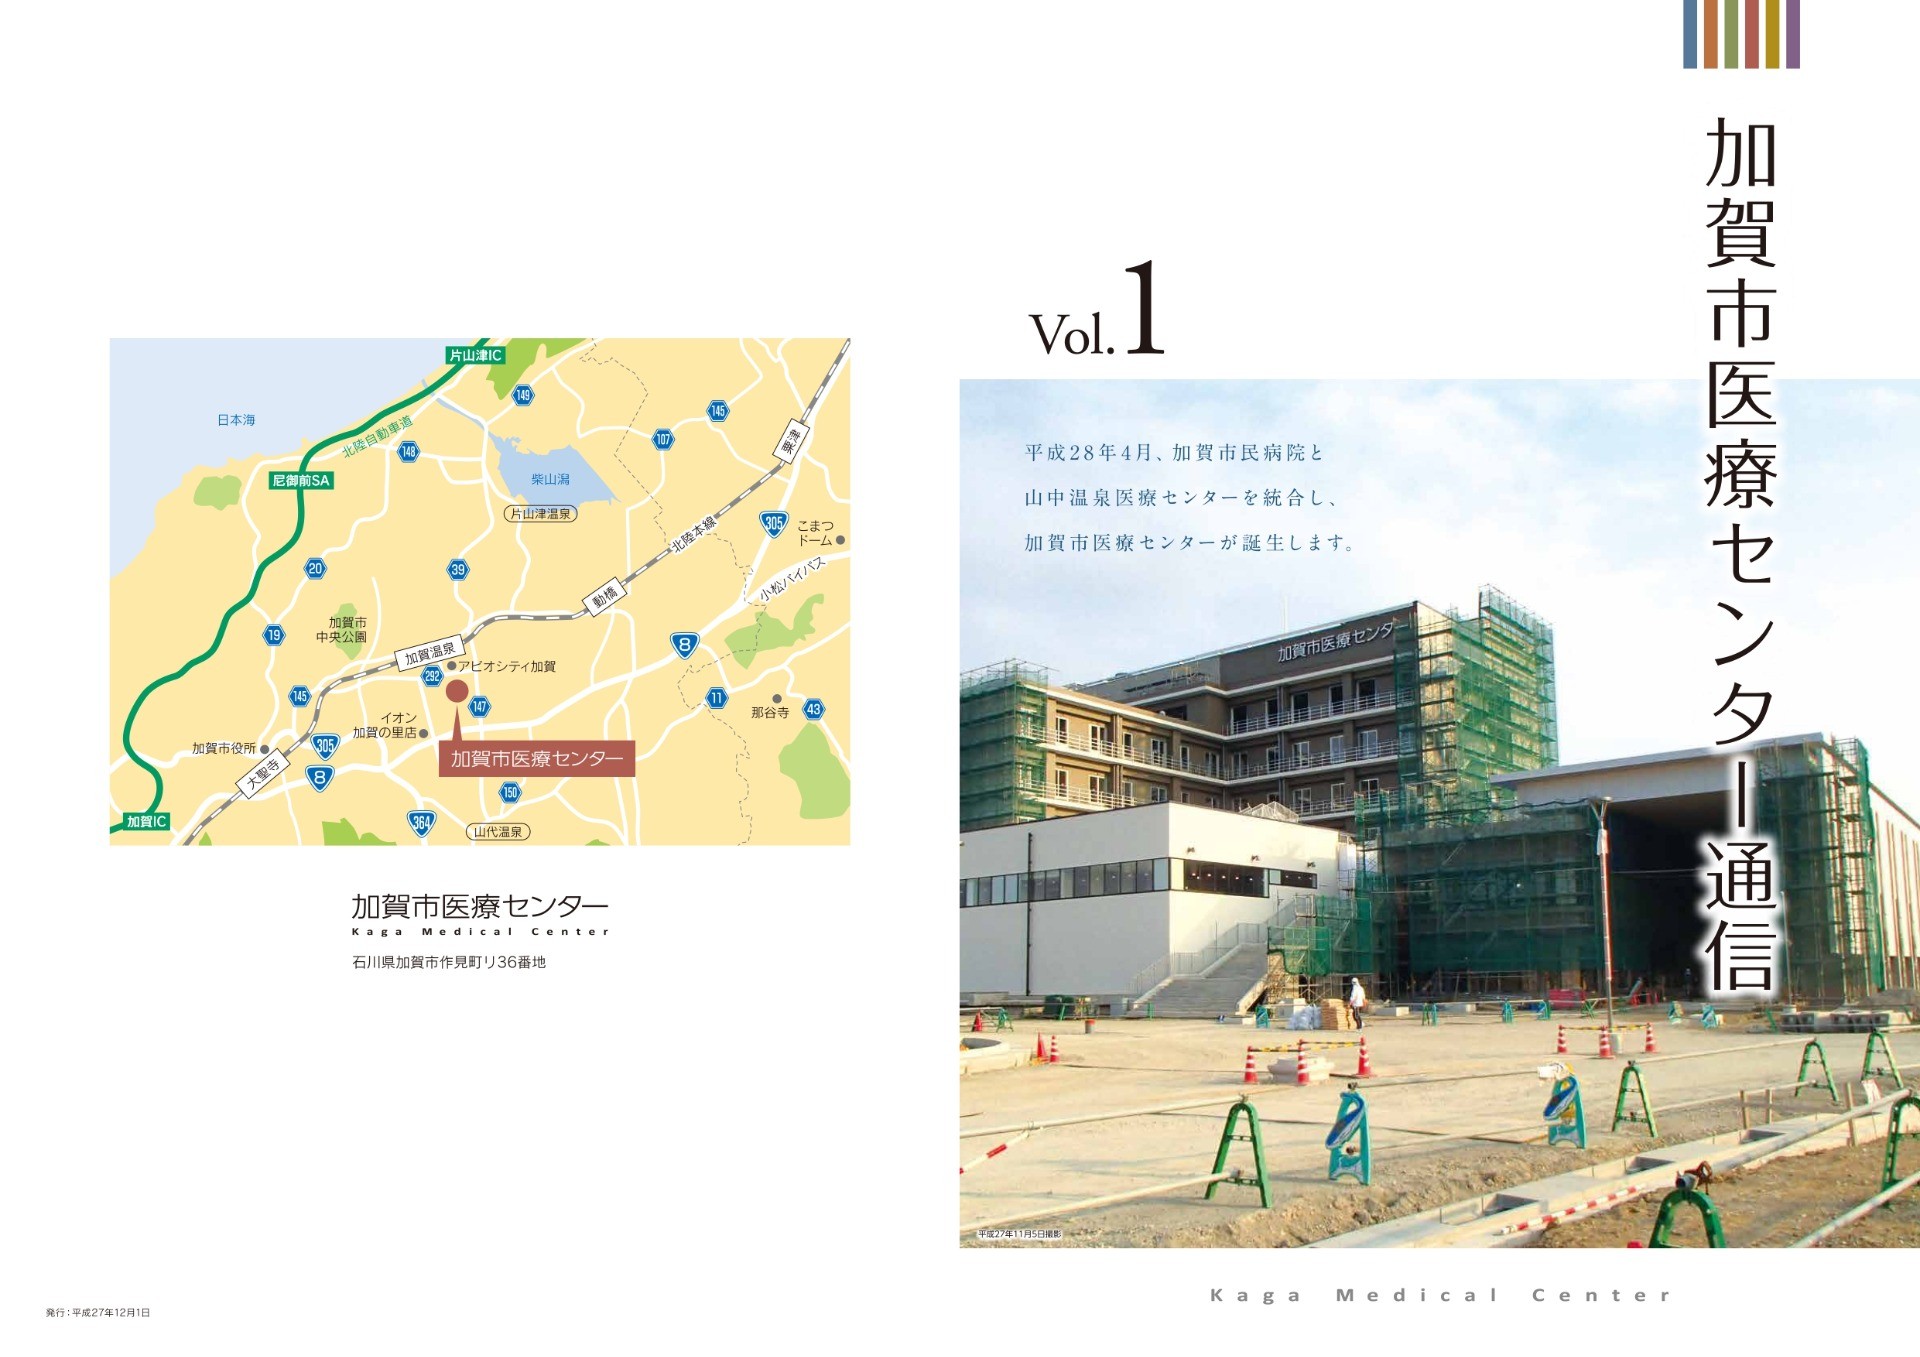 加賀市医療センター通信 Vol.1